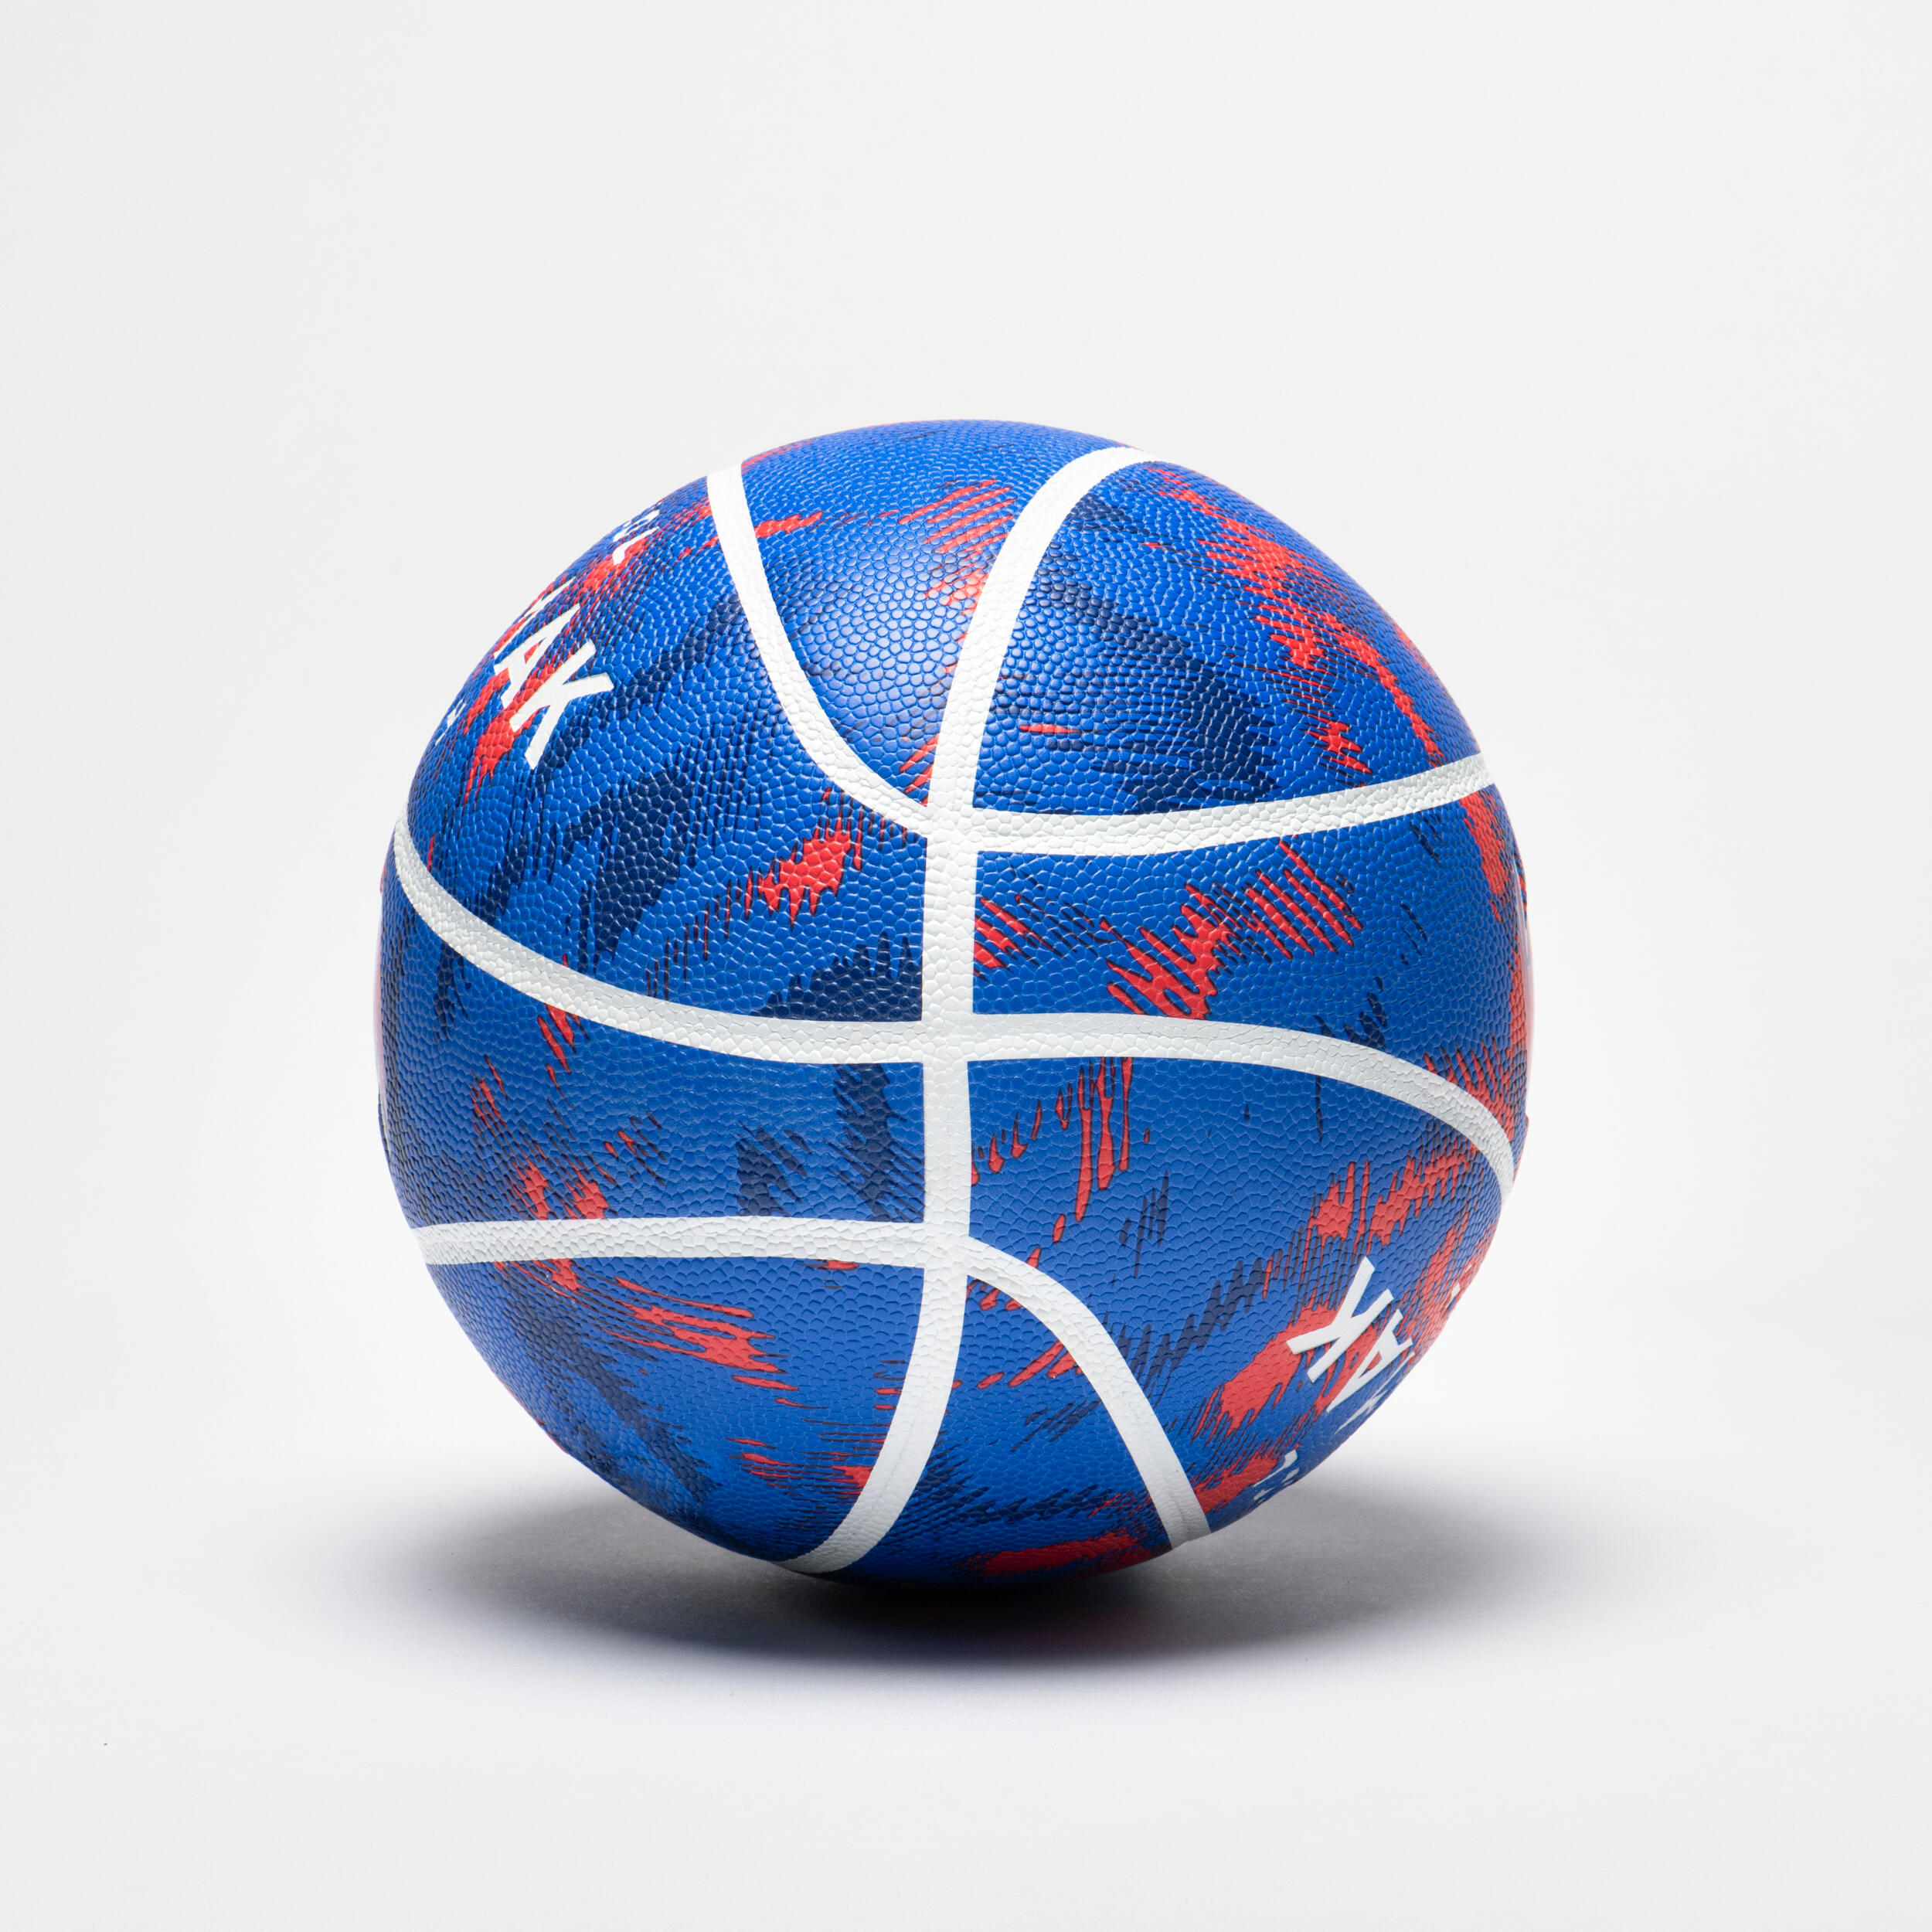 Ballon de basketball de taille 4 enfant – K500 bleu/orange - TARMAK